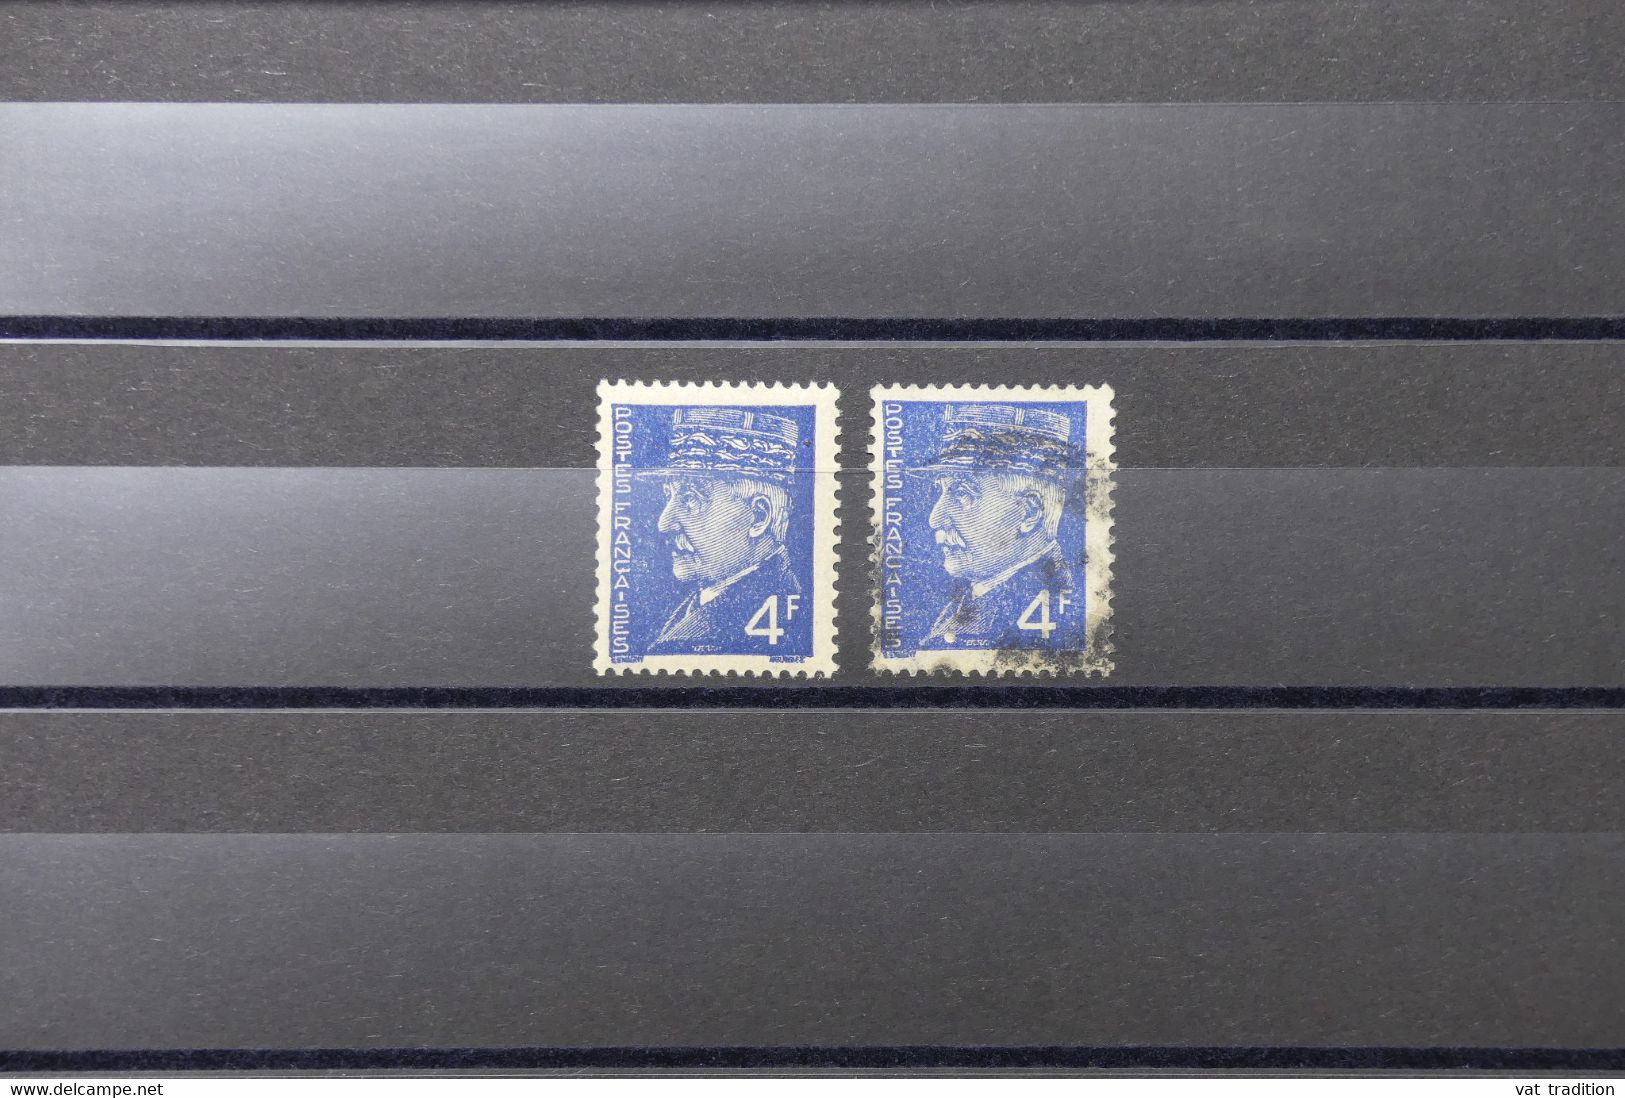 FRANCE - Type Pétain N° 521A - Variété - 1 Exemplaire Moustache En Bleu + 1 Normal - Oblitérés - L 89076 - Used Stamps